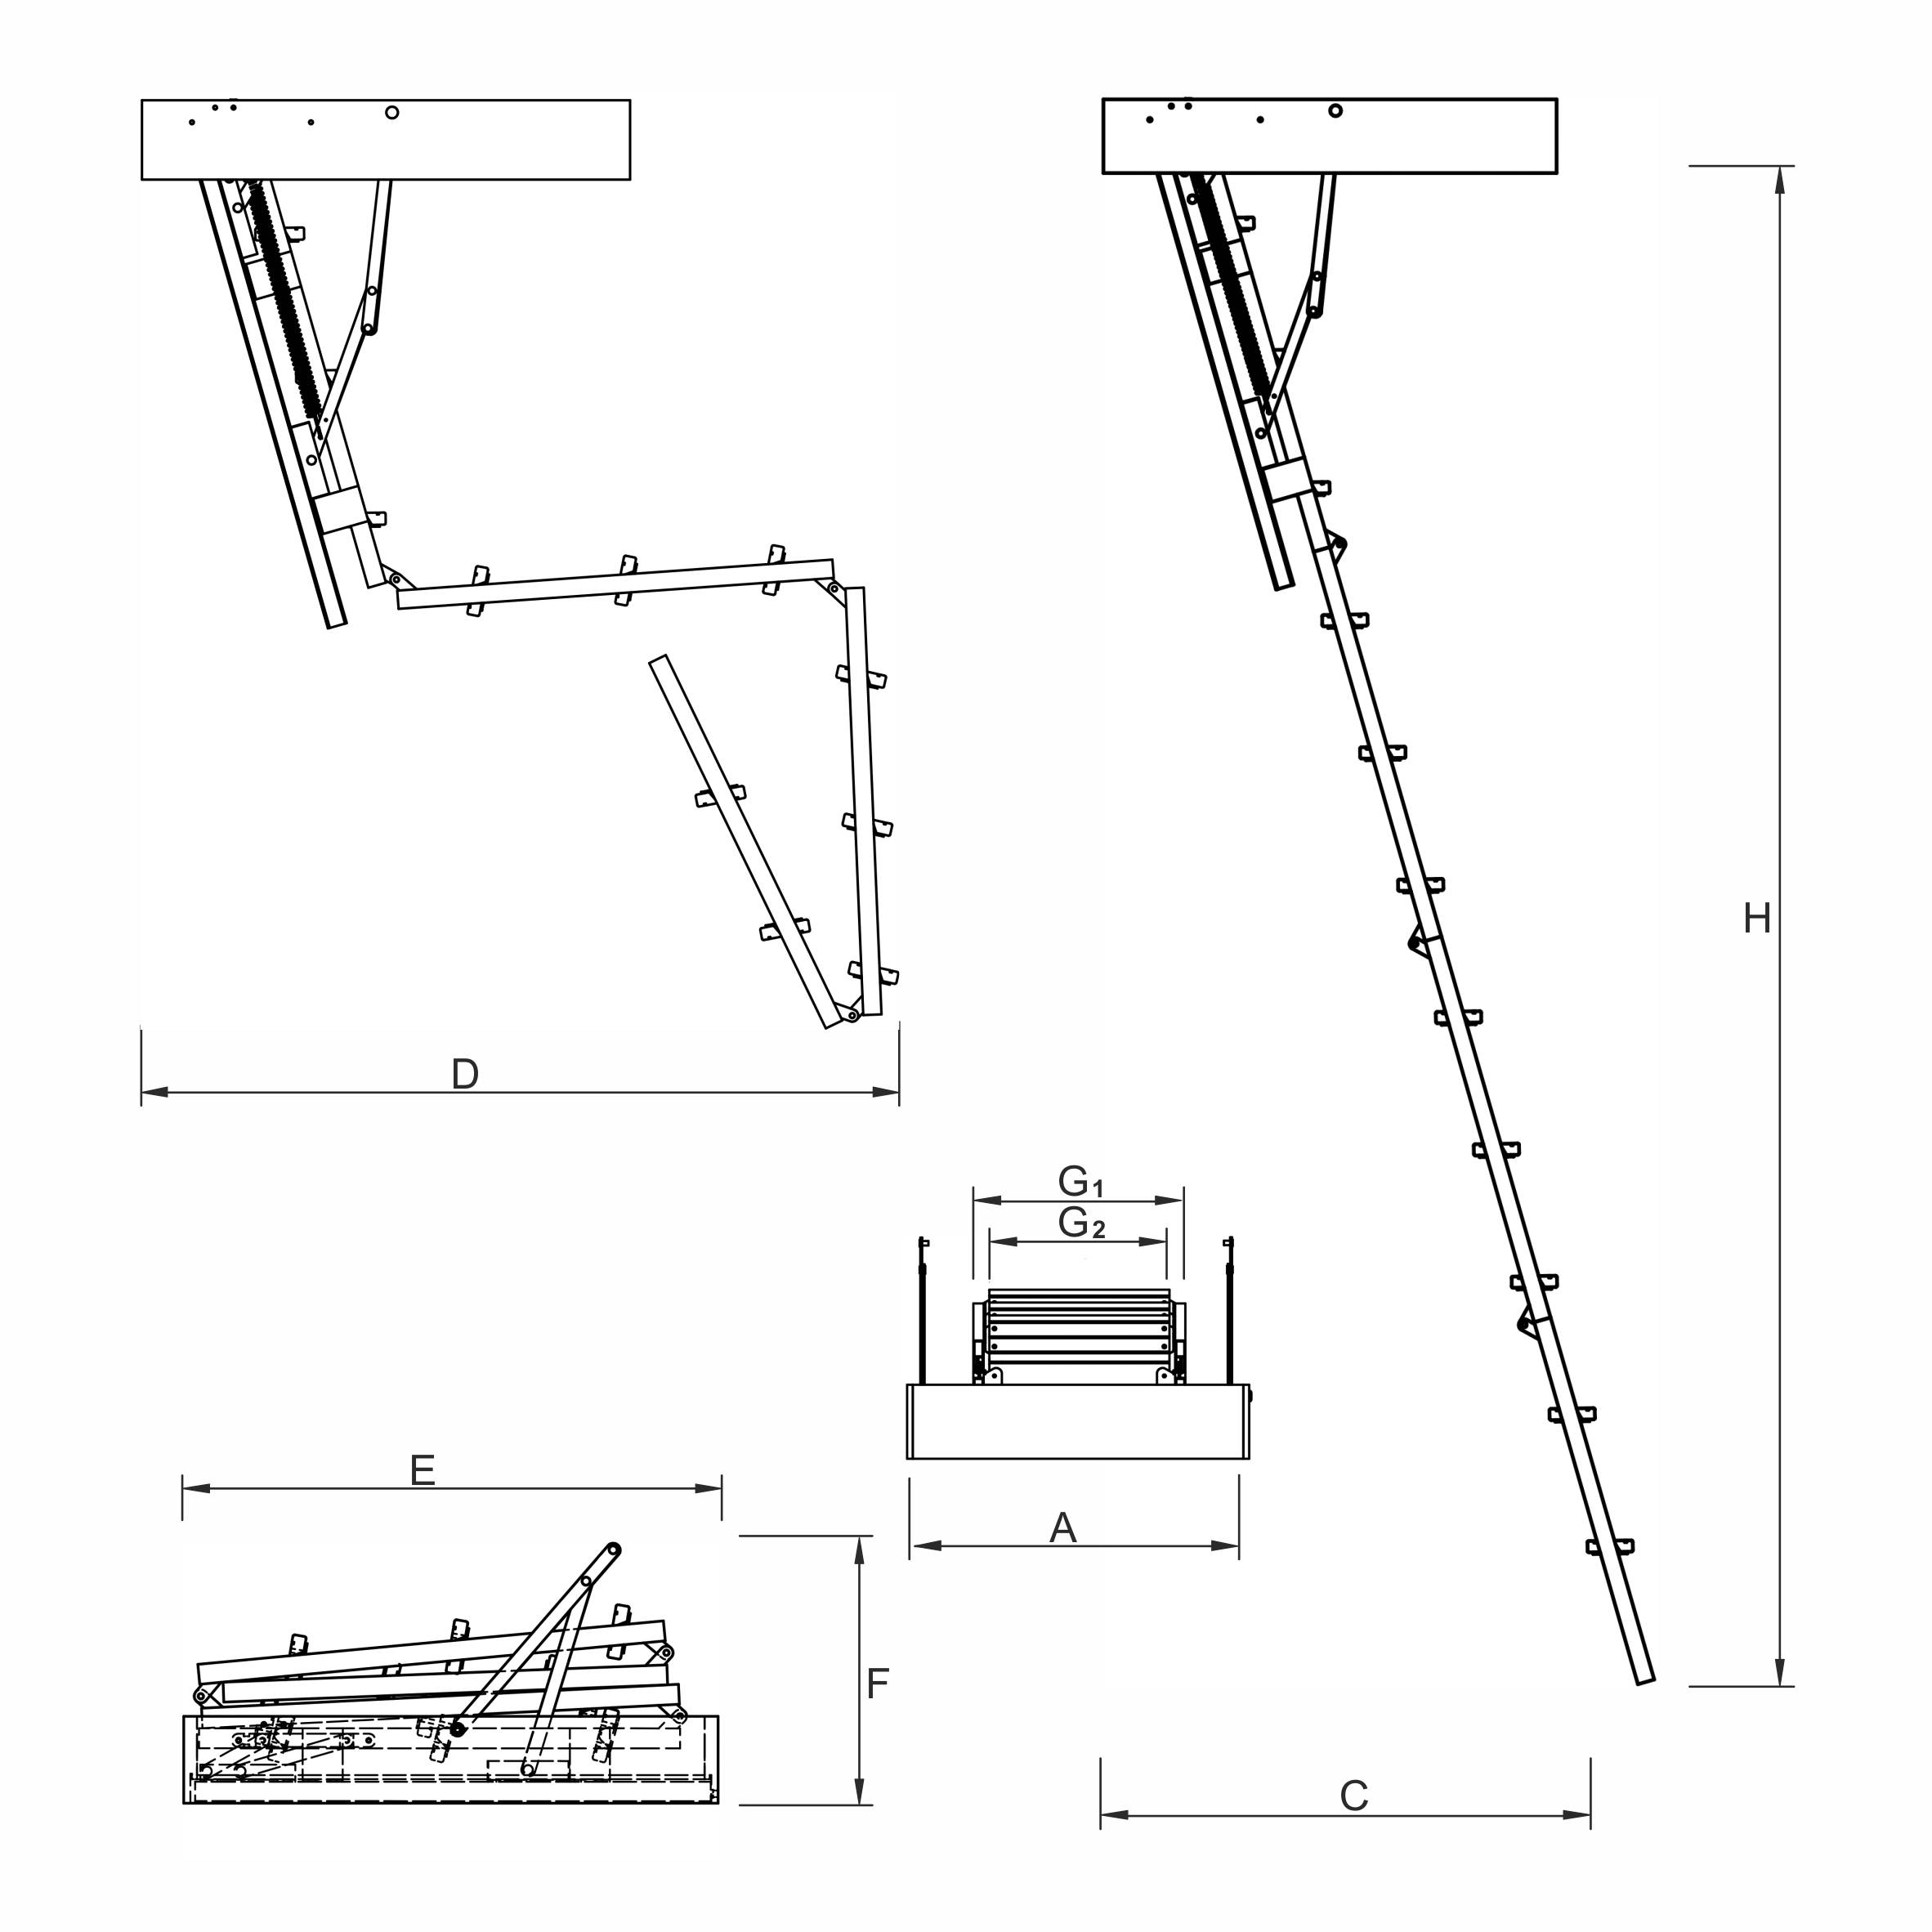 Установка люка на чердак с лестницей своими руками: пошаговая инструкция - размеры и расстояние от стены +видео